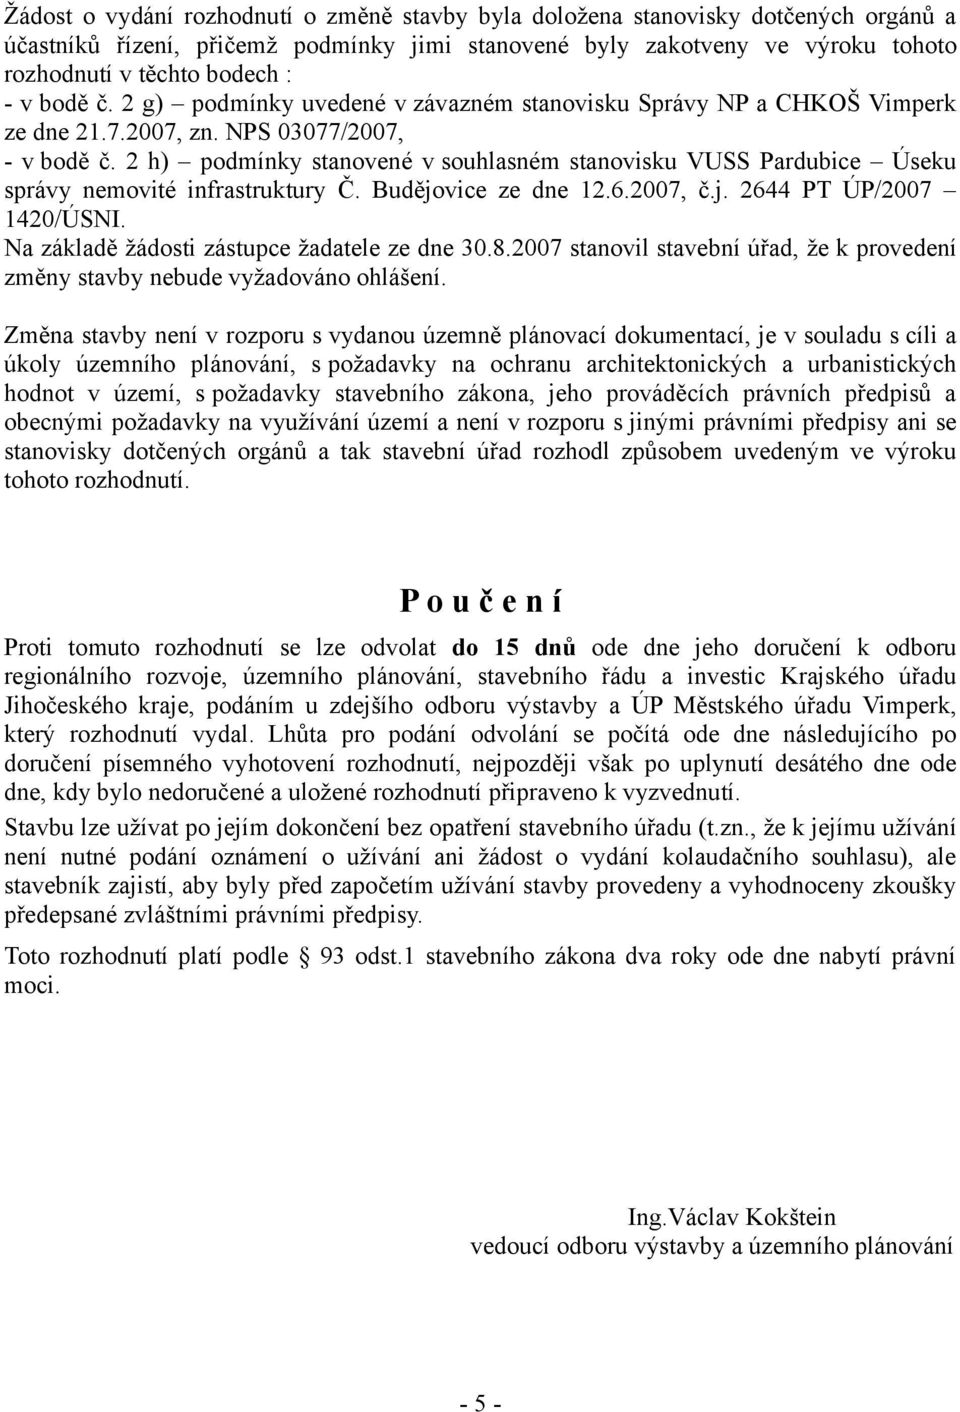 2 h) podmínky stanovené v souhlasném stanovisku VUSS Pardubice Úseku správy nemovité infrastruktury Č. Budějovice ze dne 12.6.2007, č.j. 2644 PT ÚP/2007 1420/ÚSNI.